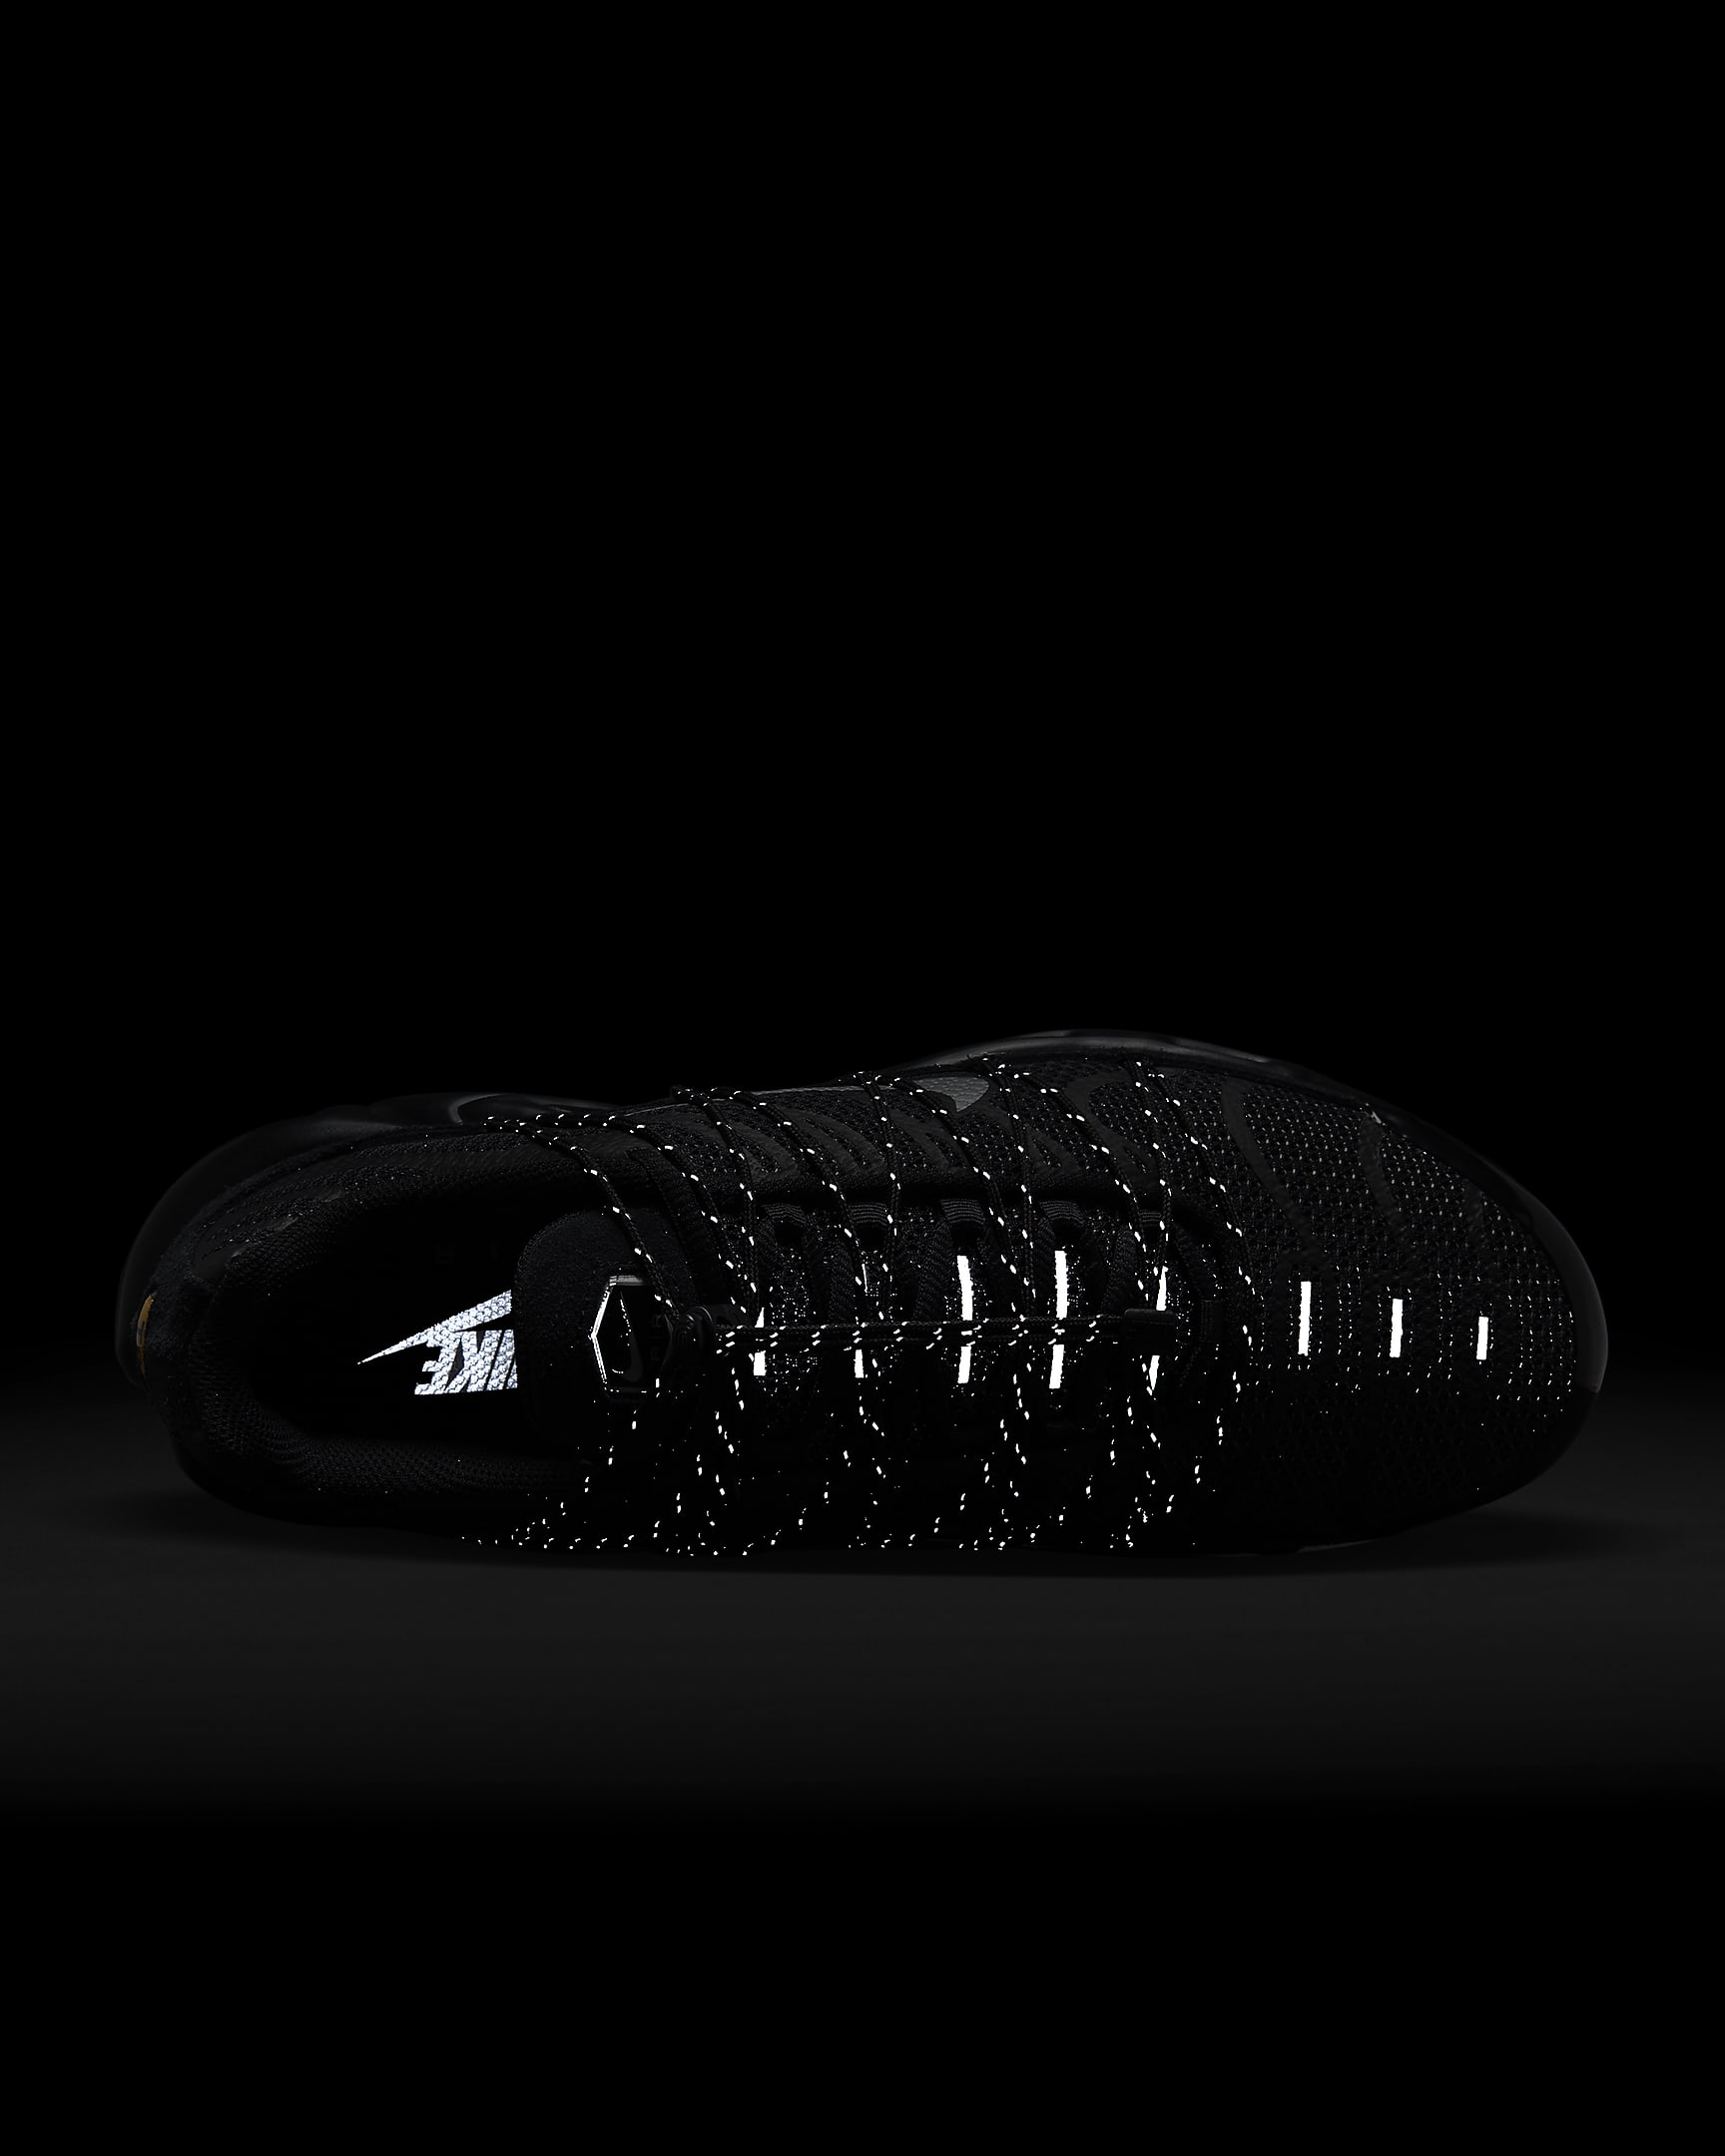 Sapatilhas Nike Air Max Plus Utility para homem - Preto/Branco/Prateado metalizado